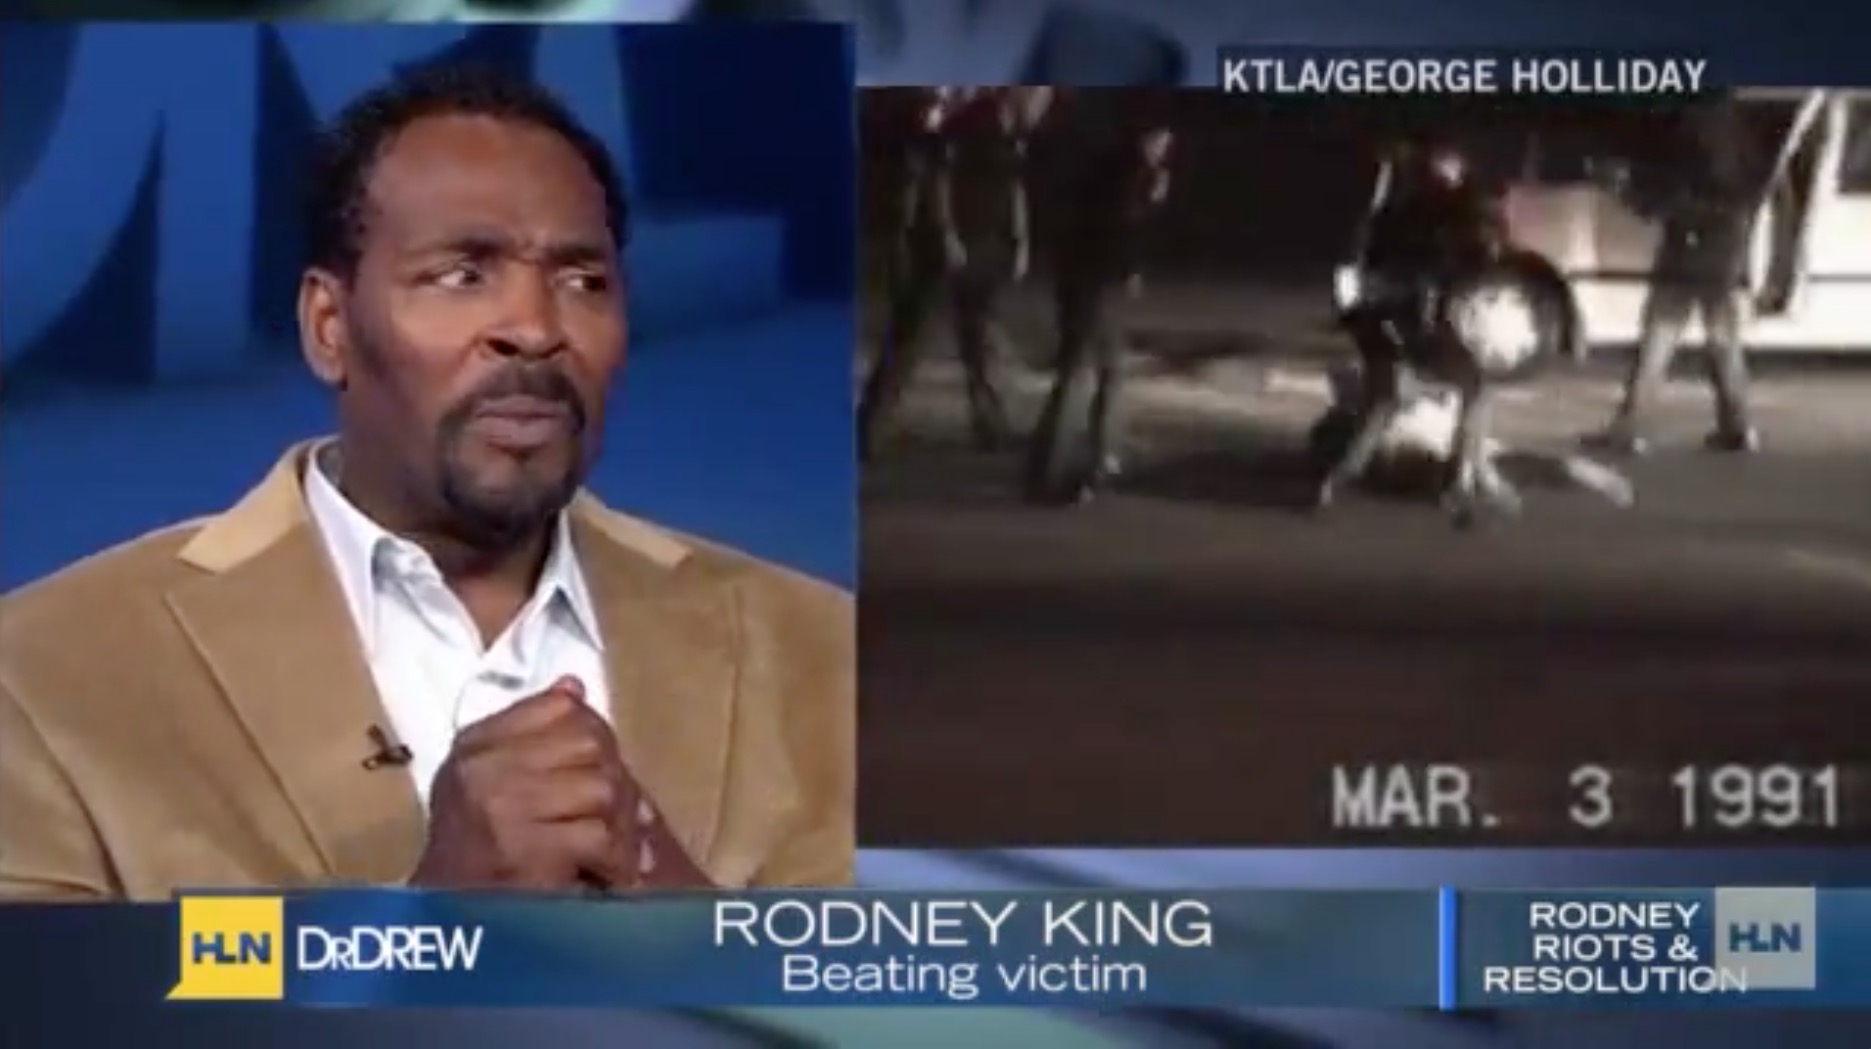 Rodney King en la tele viendo beating